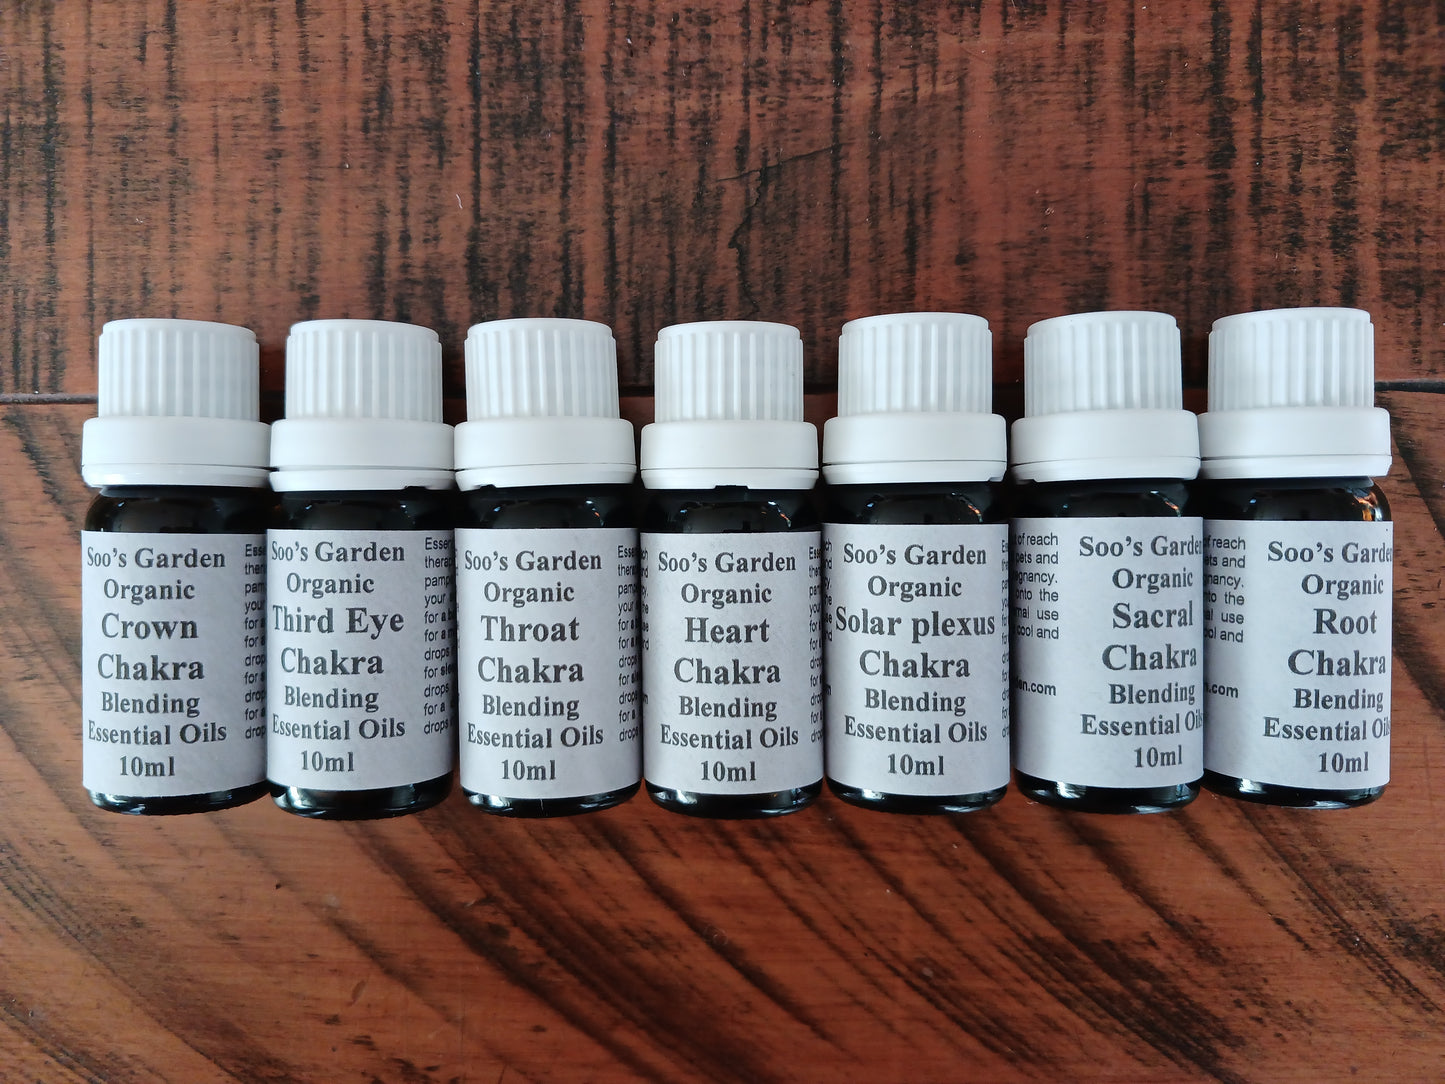 Chakra blending essential oils 10ml